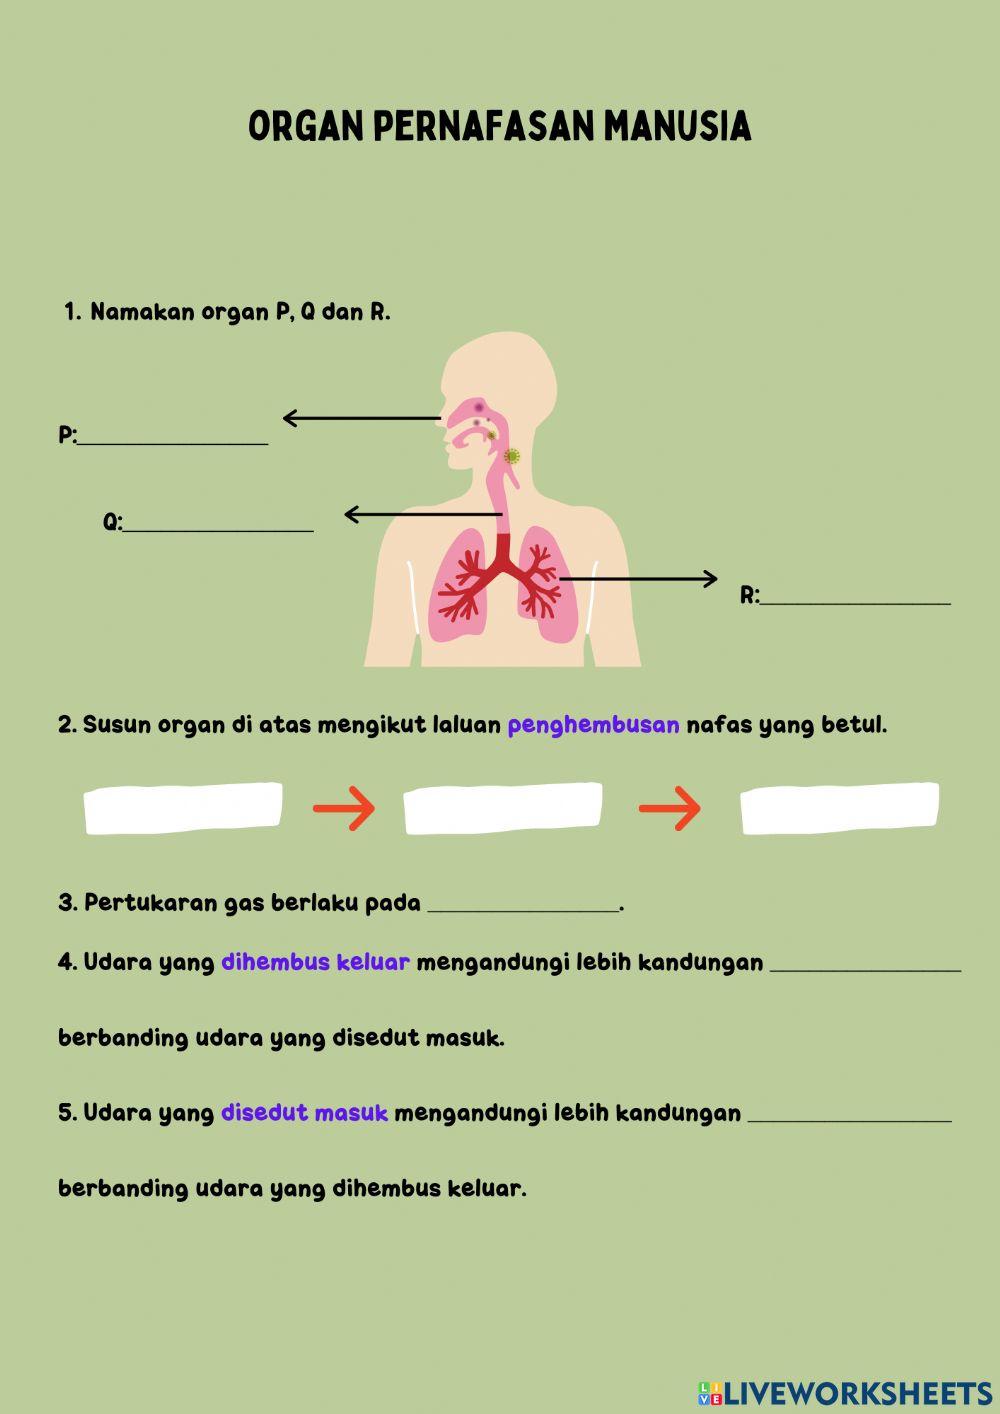 Organ pernafasan manusia